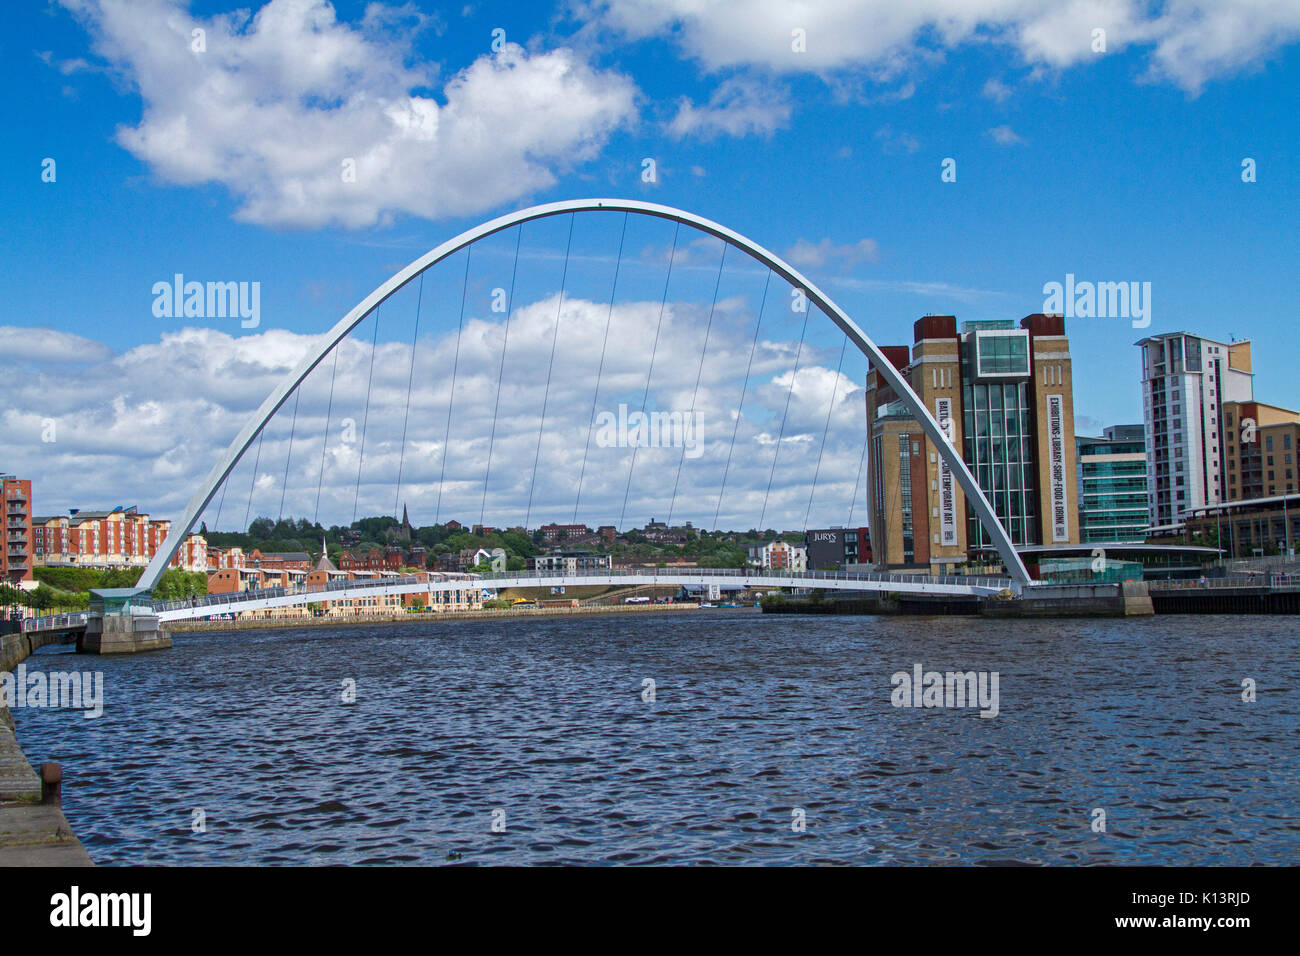 Gateshead Millennium Bridge, kippen Fußgängerbrücke über den Fluss Tyne in Newcastle-upon-Tyne mit Gebäuden der Stadt in der Nähe unter blauem Himmel Stockfoto